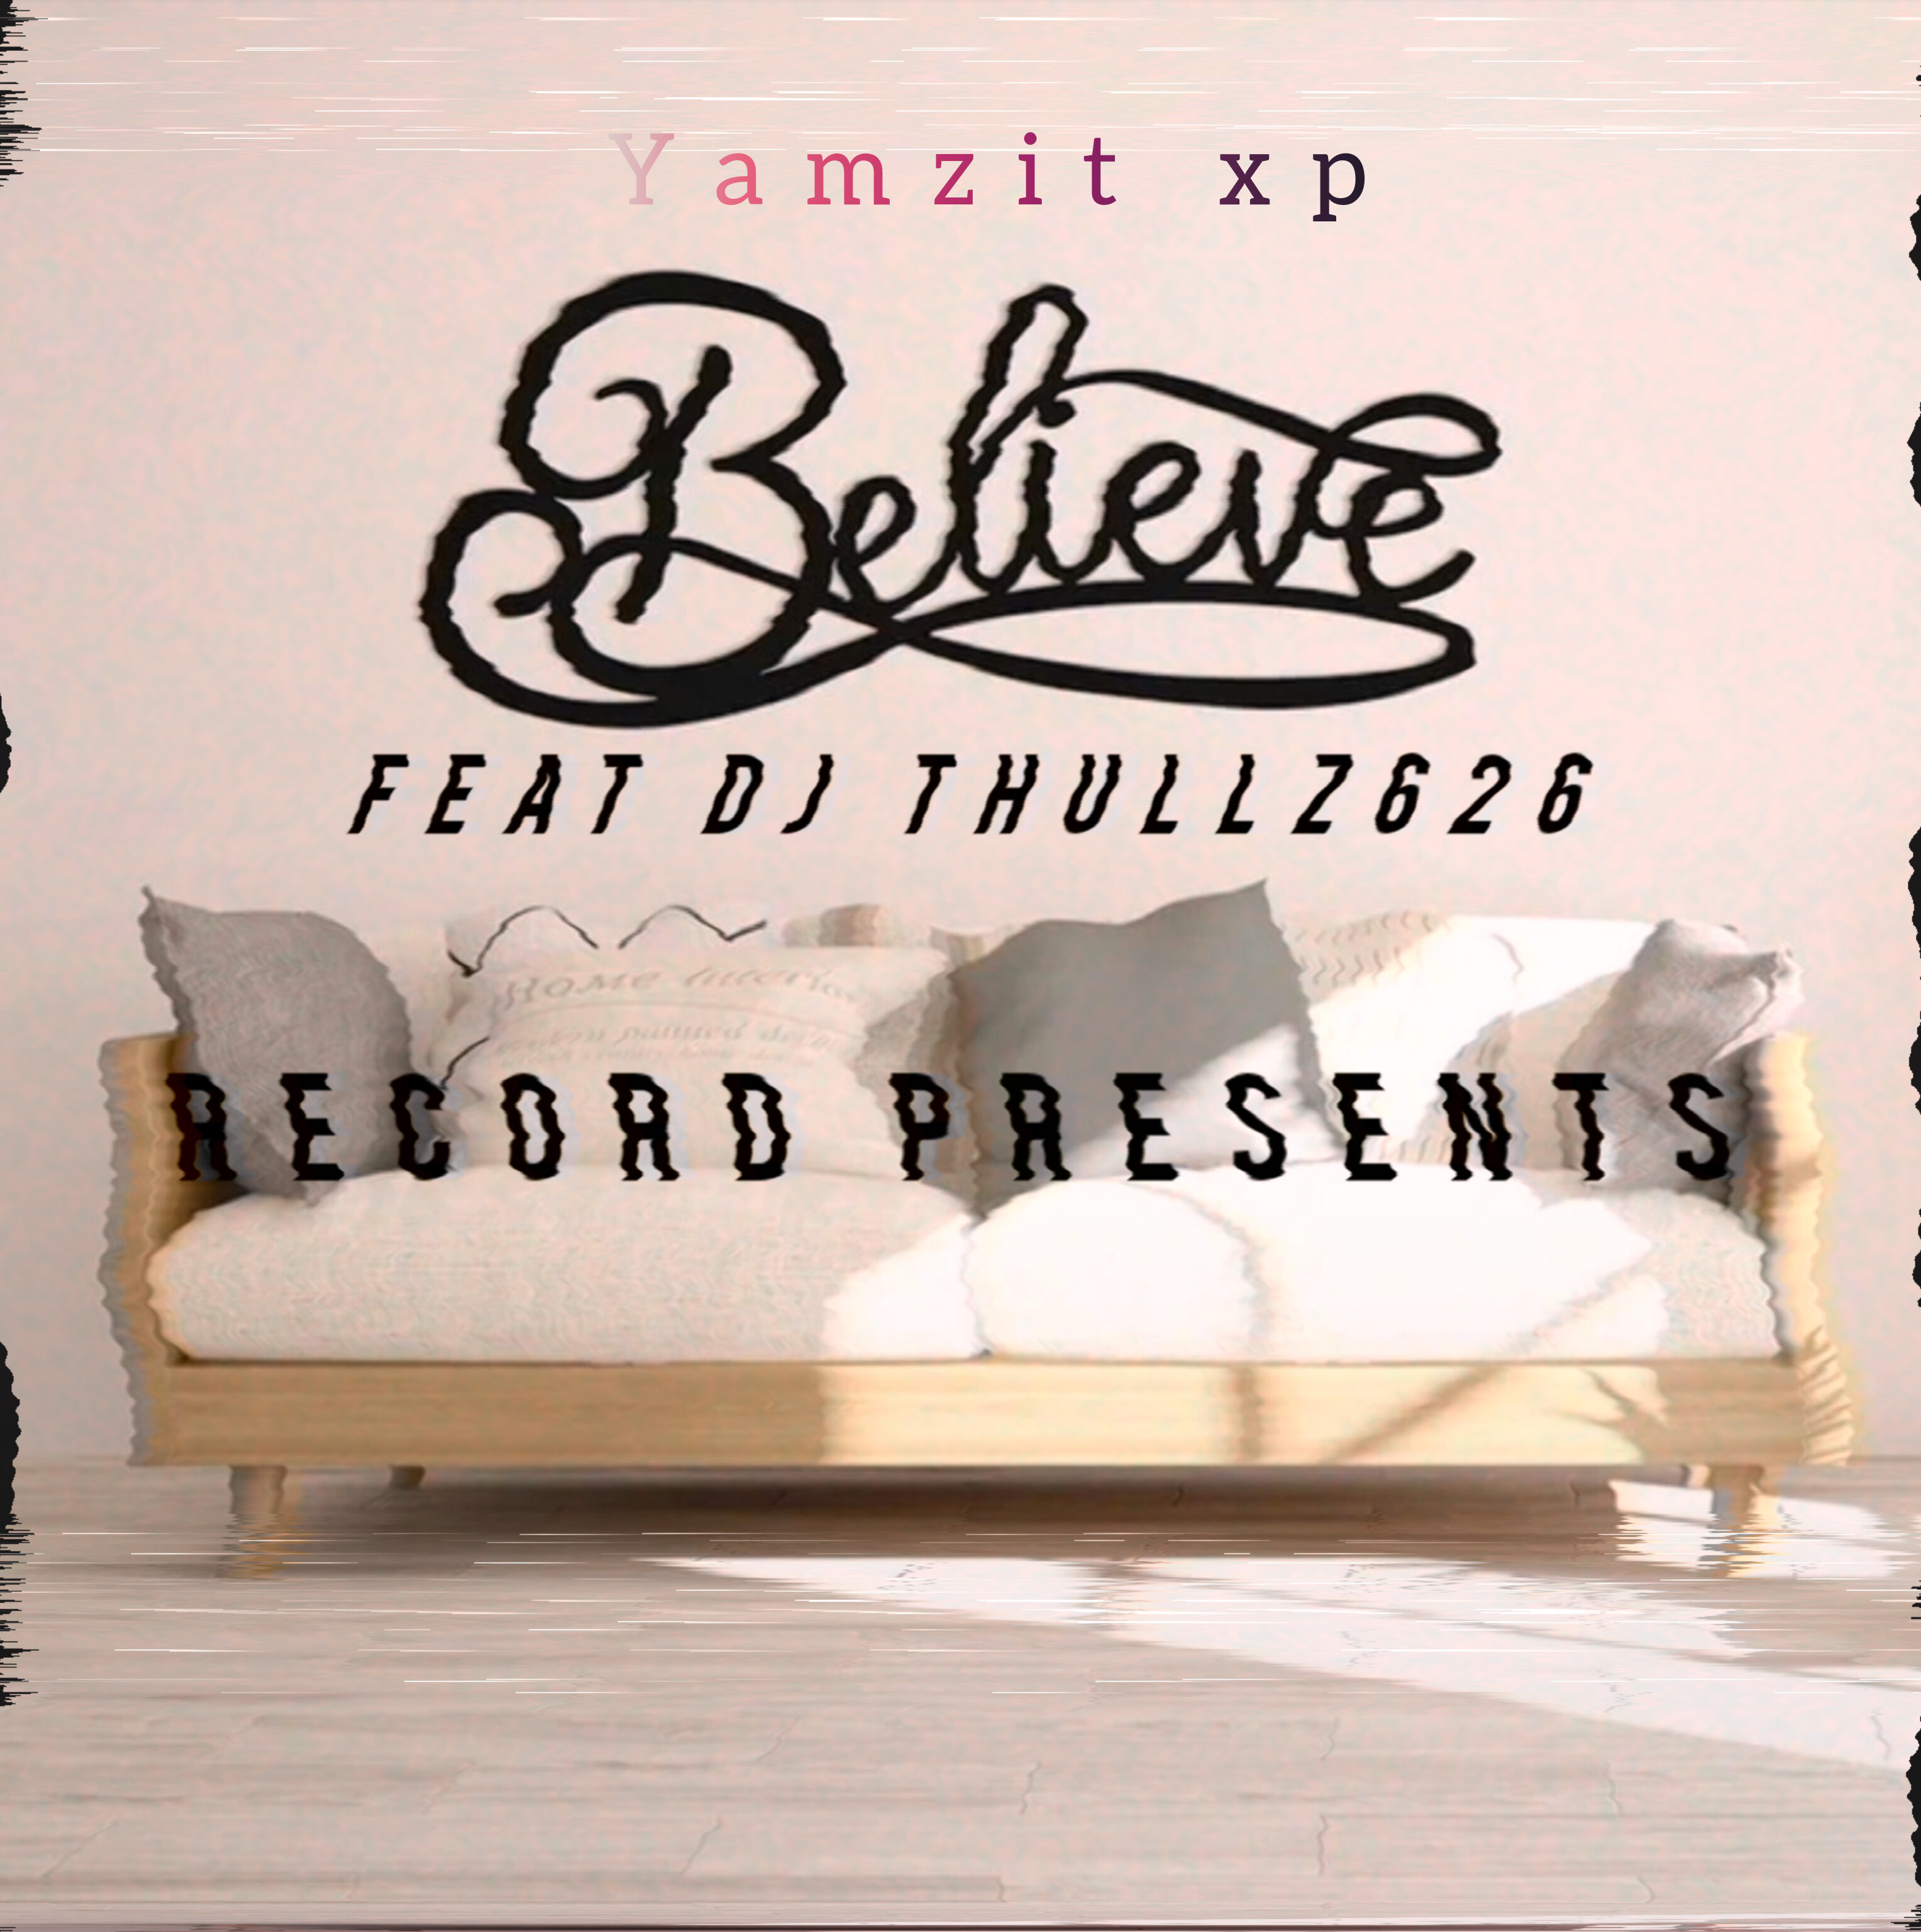 Believe - Yamza Xp Feat Dj thullz626